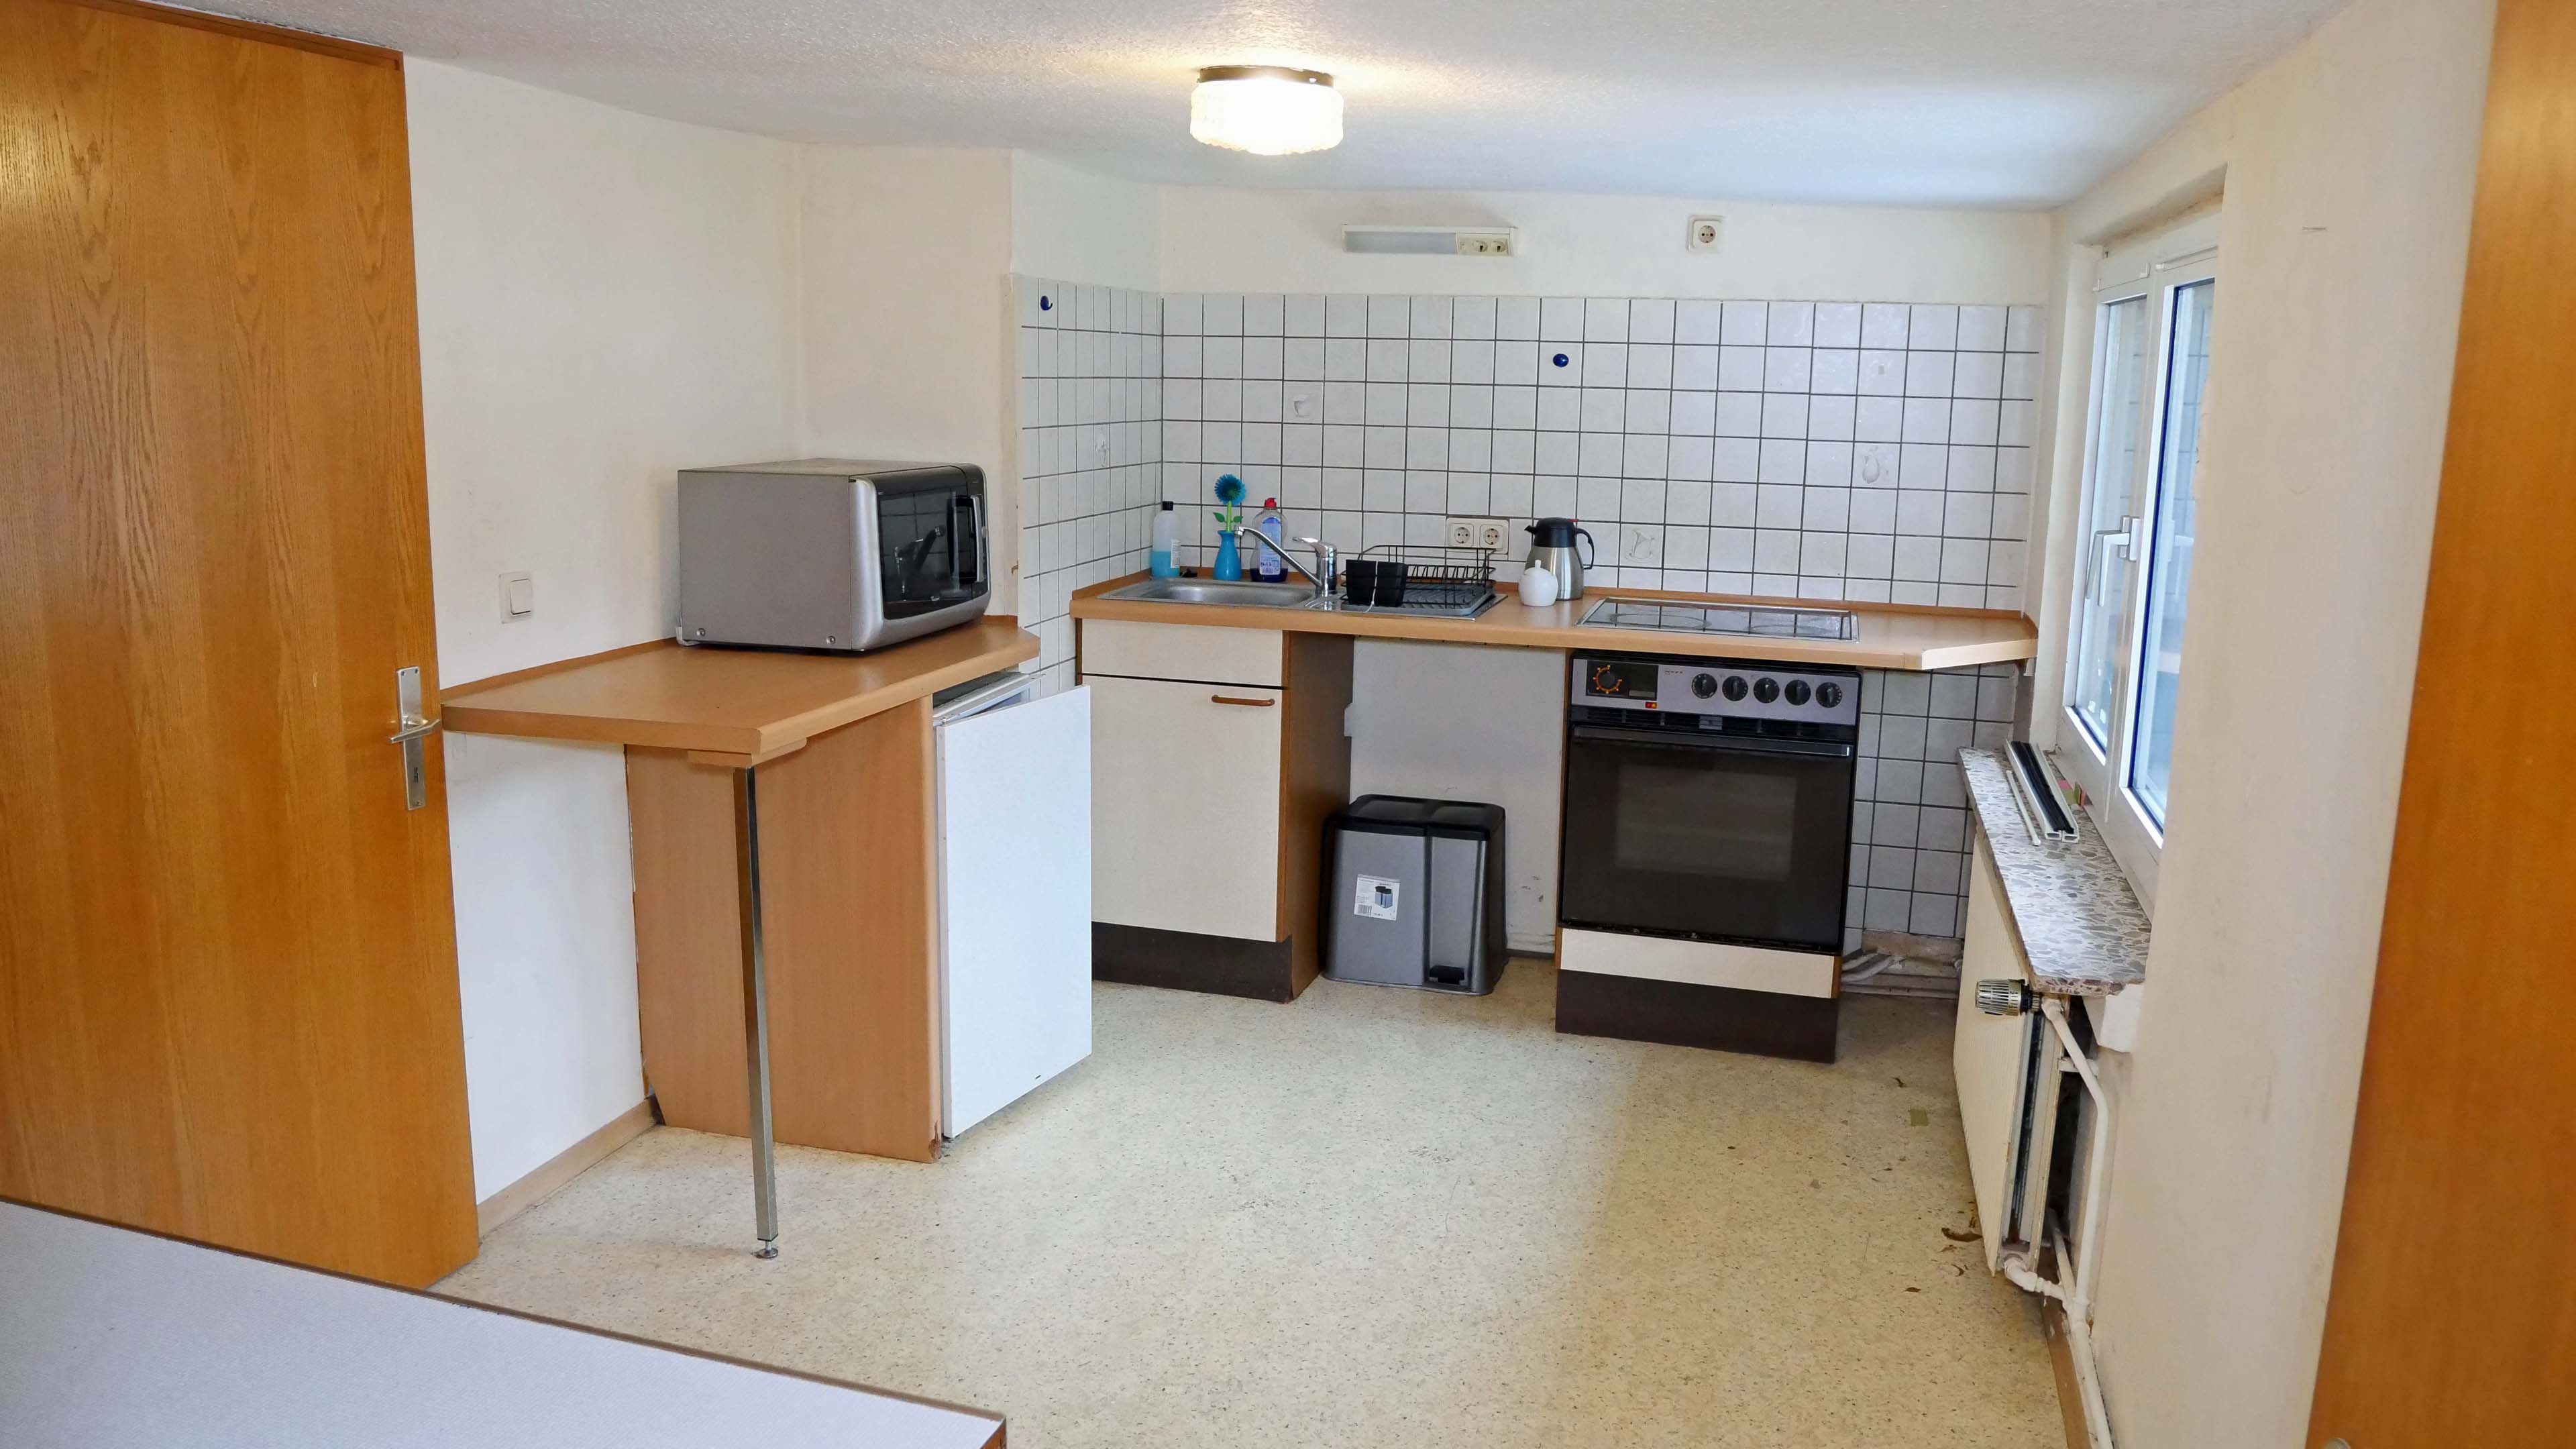 Reichshof-Wildberg: Preiswertes Wohnen im Fachwerkhaus, ...Küche 10,5 m²